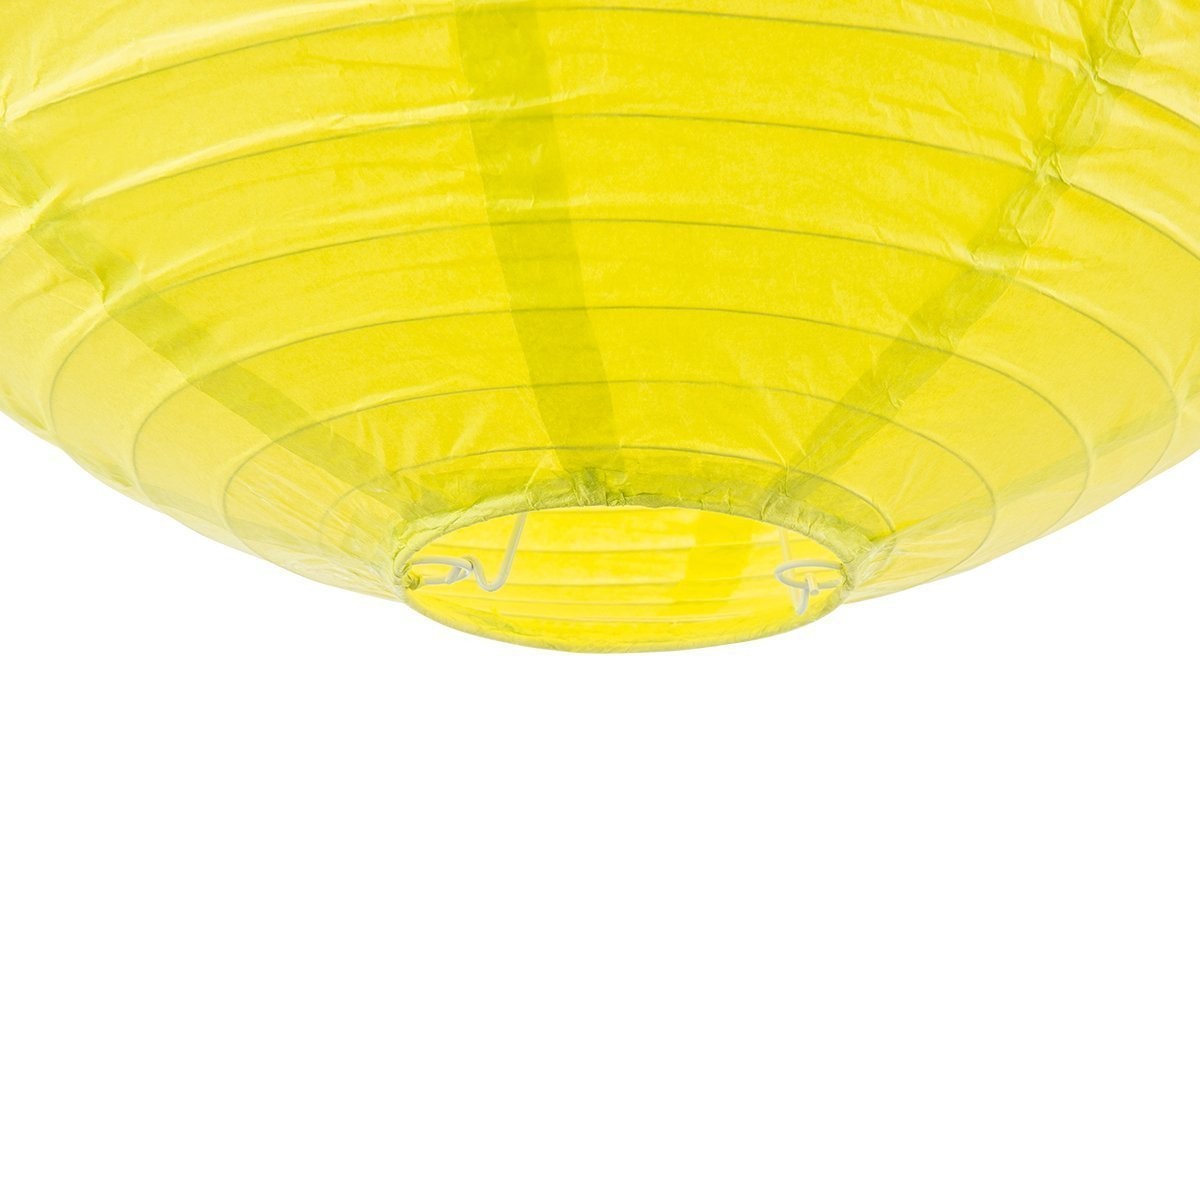 Lampion aus Papier - gelbgrün - 40cm - für E27 Hängefassungen oder Lichterketten